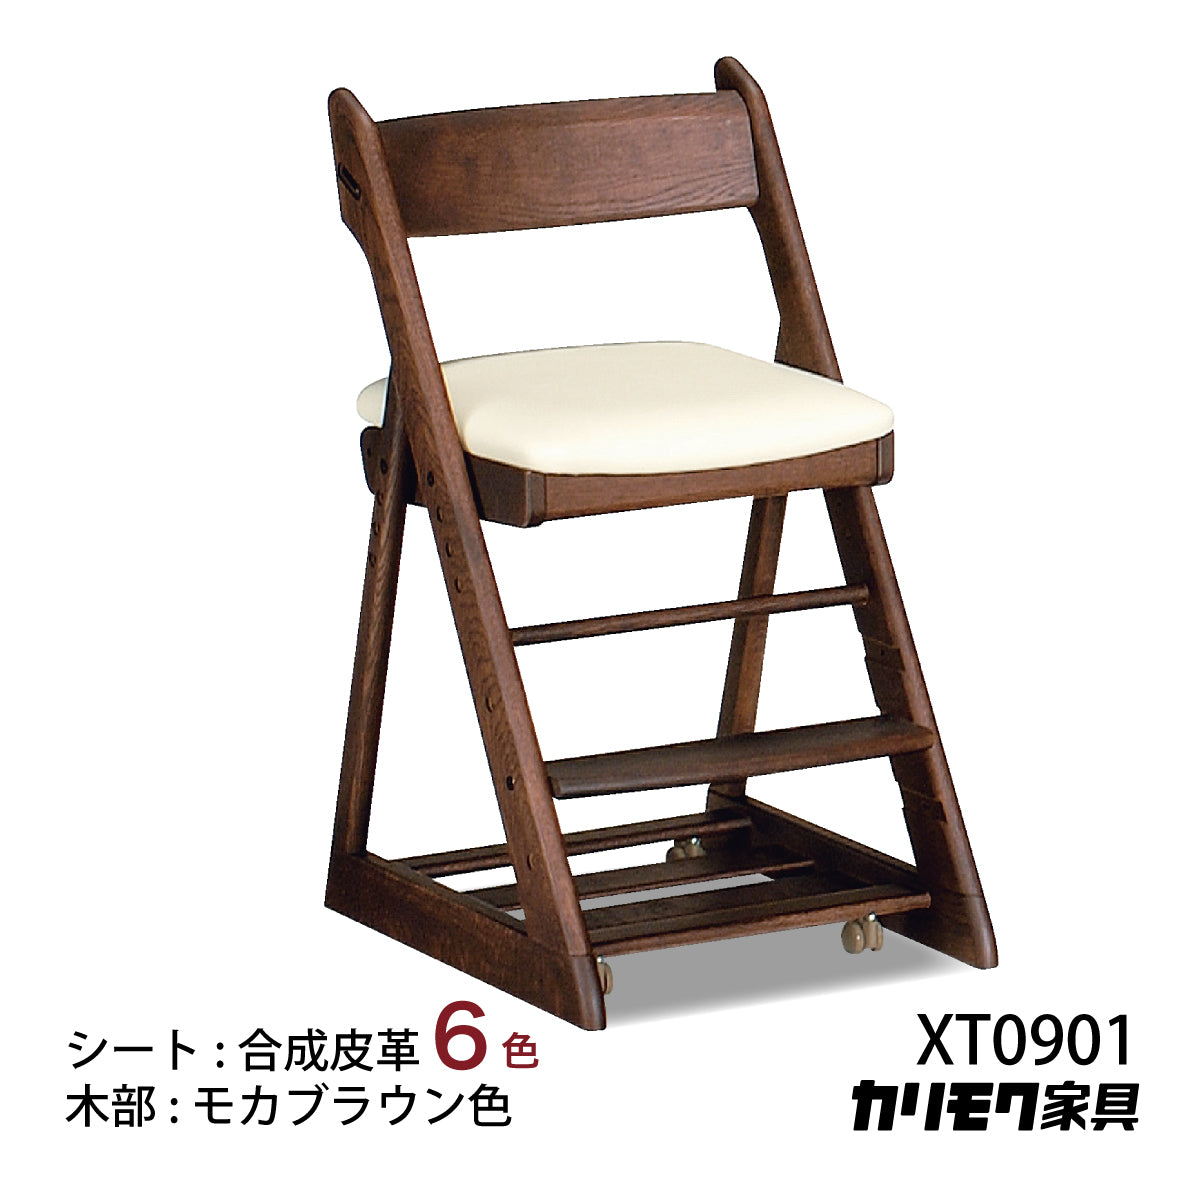 カリモク 学習椅子 XT0901 モカブラウン色 オーク材 デスクチェア